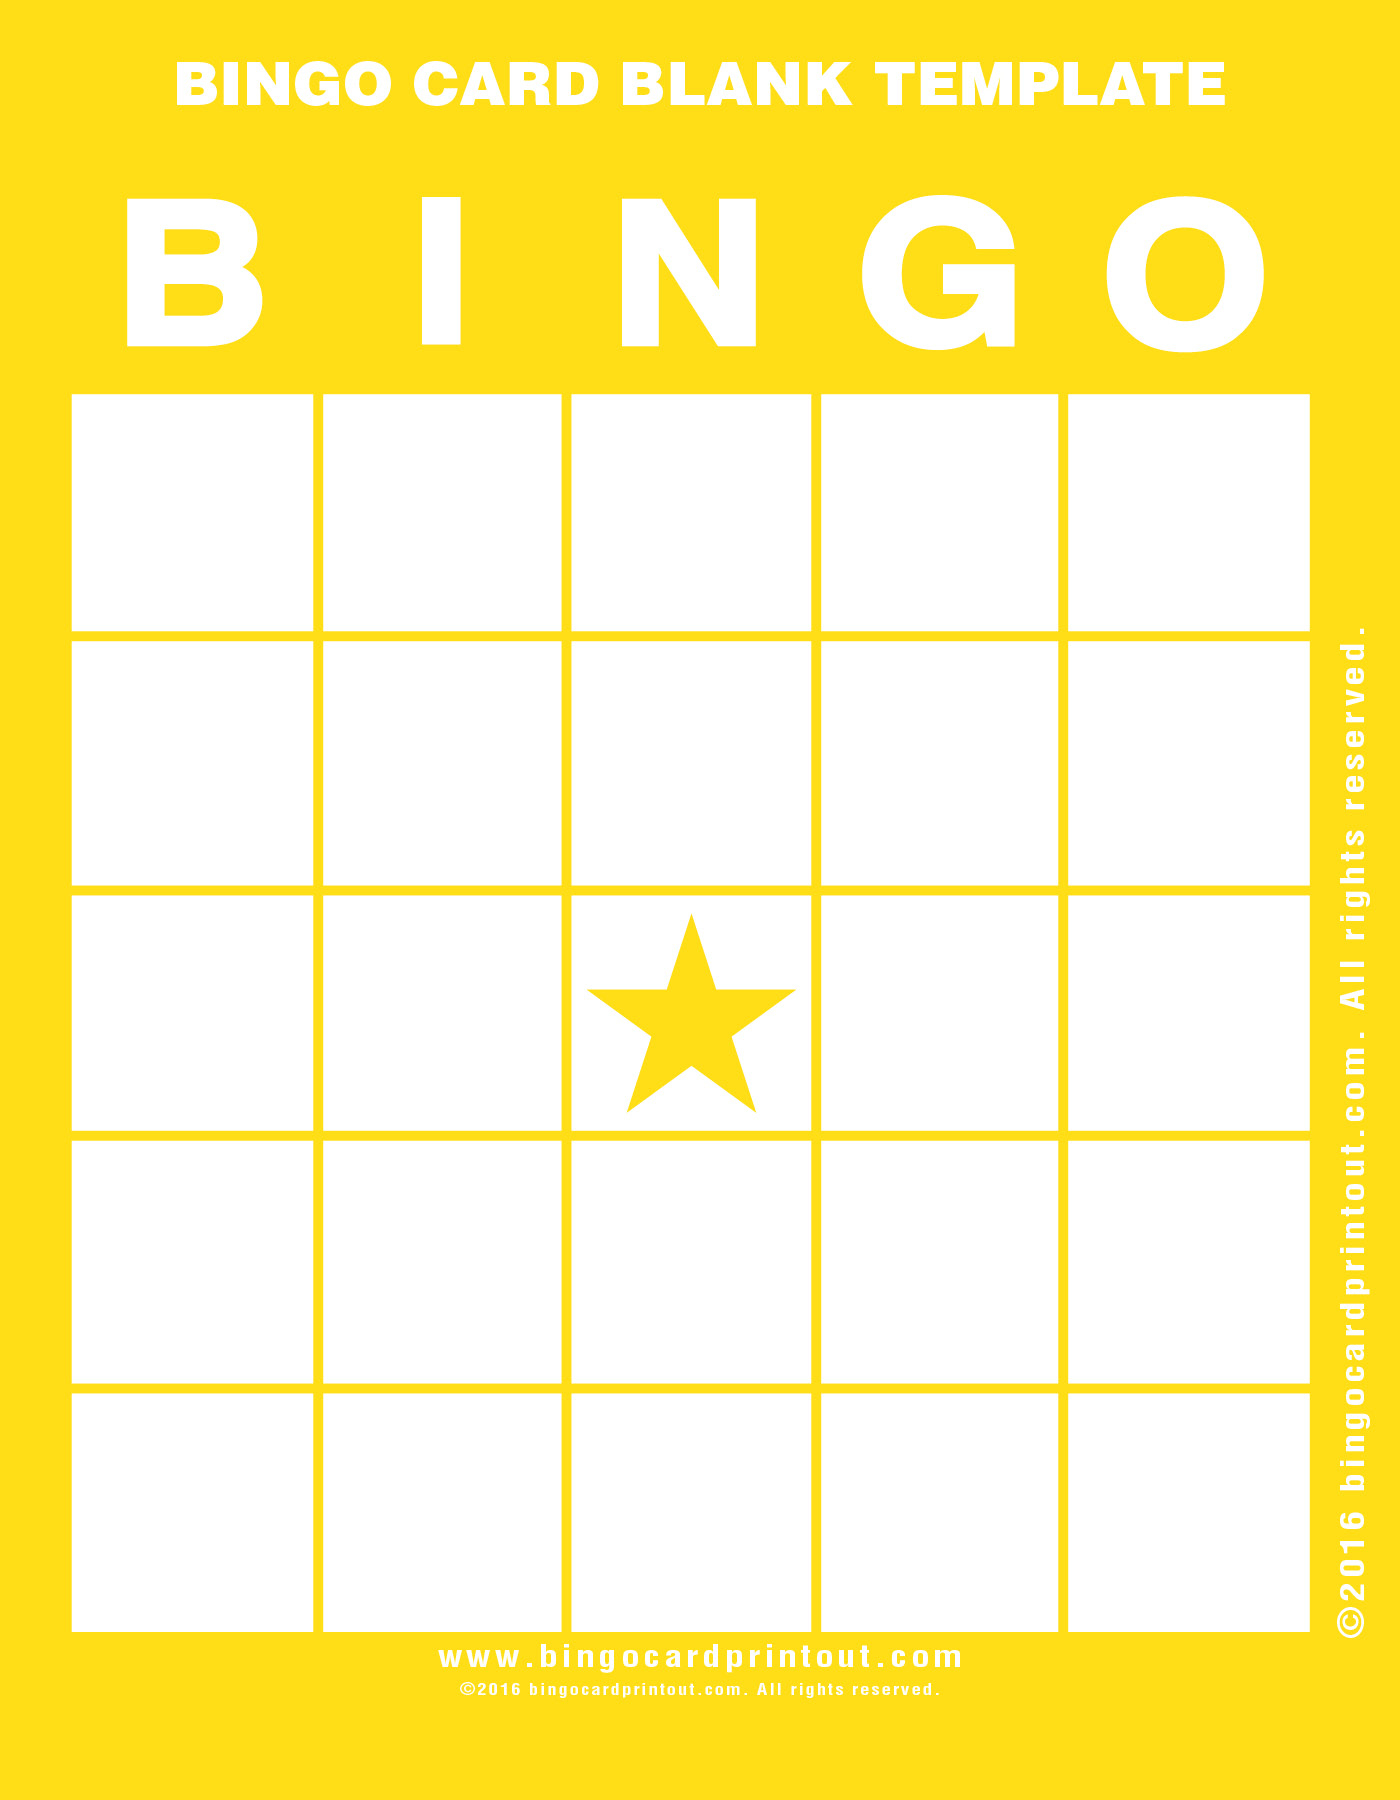 Bingo Card Blank Template - Bingocardprintout